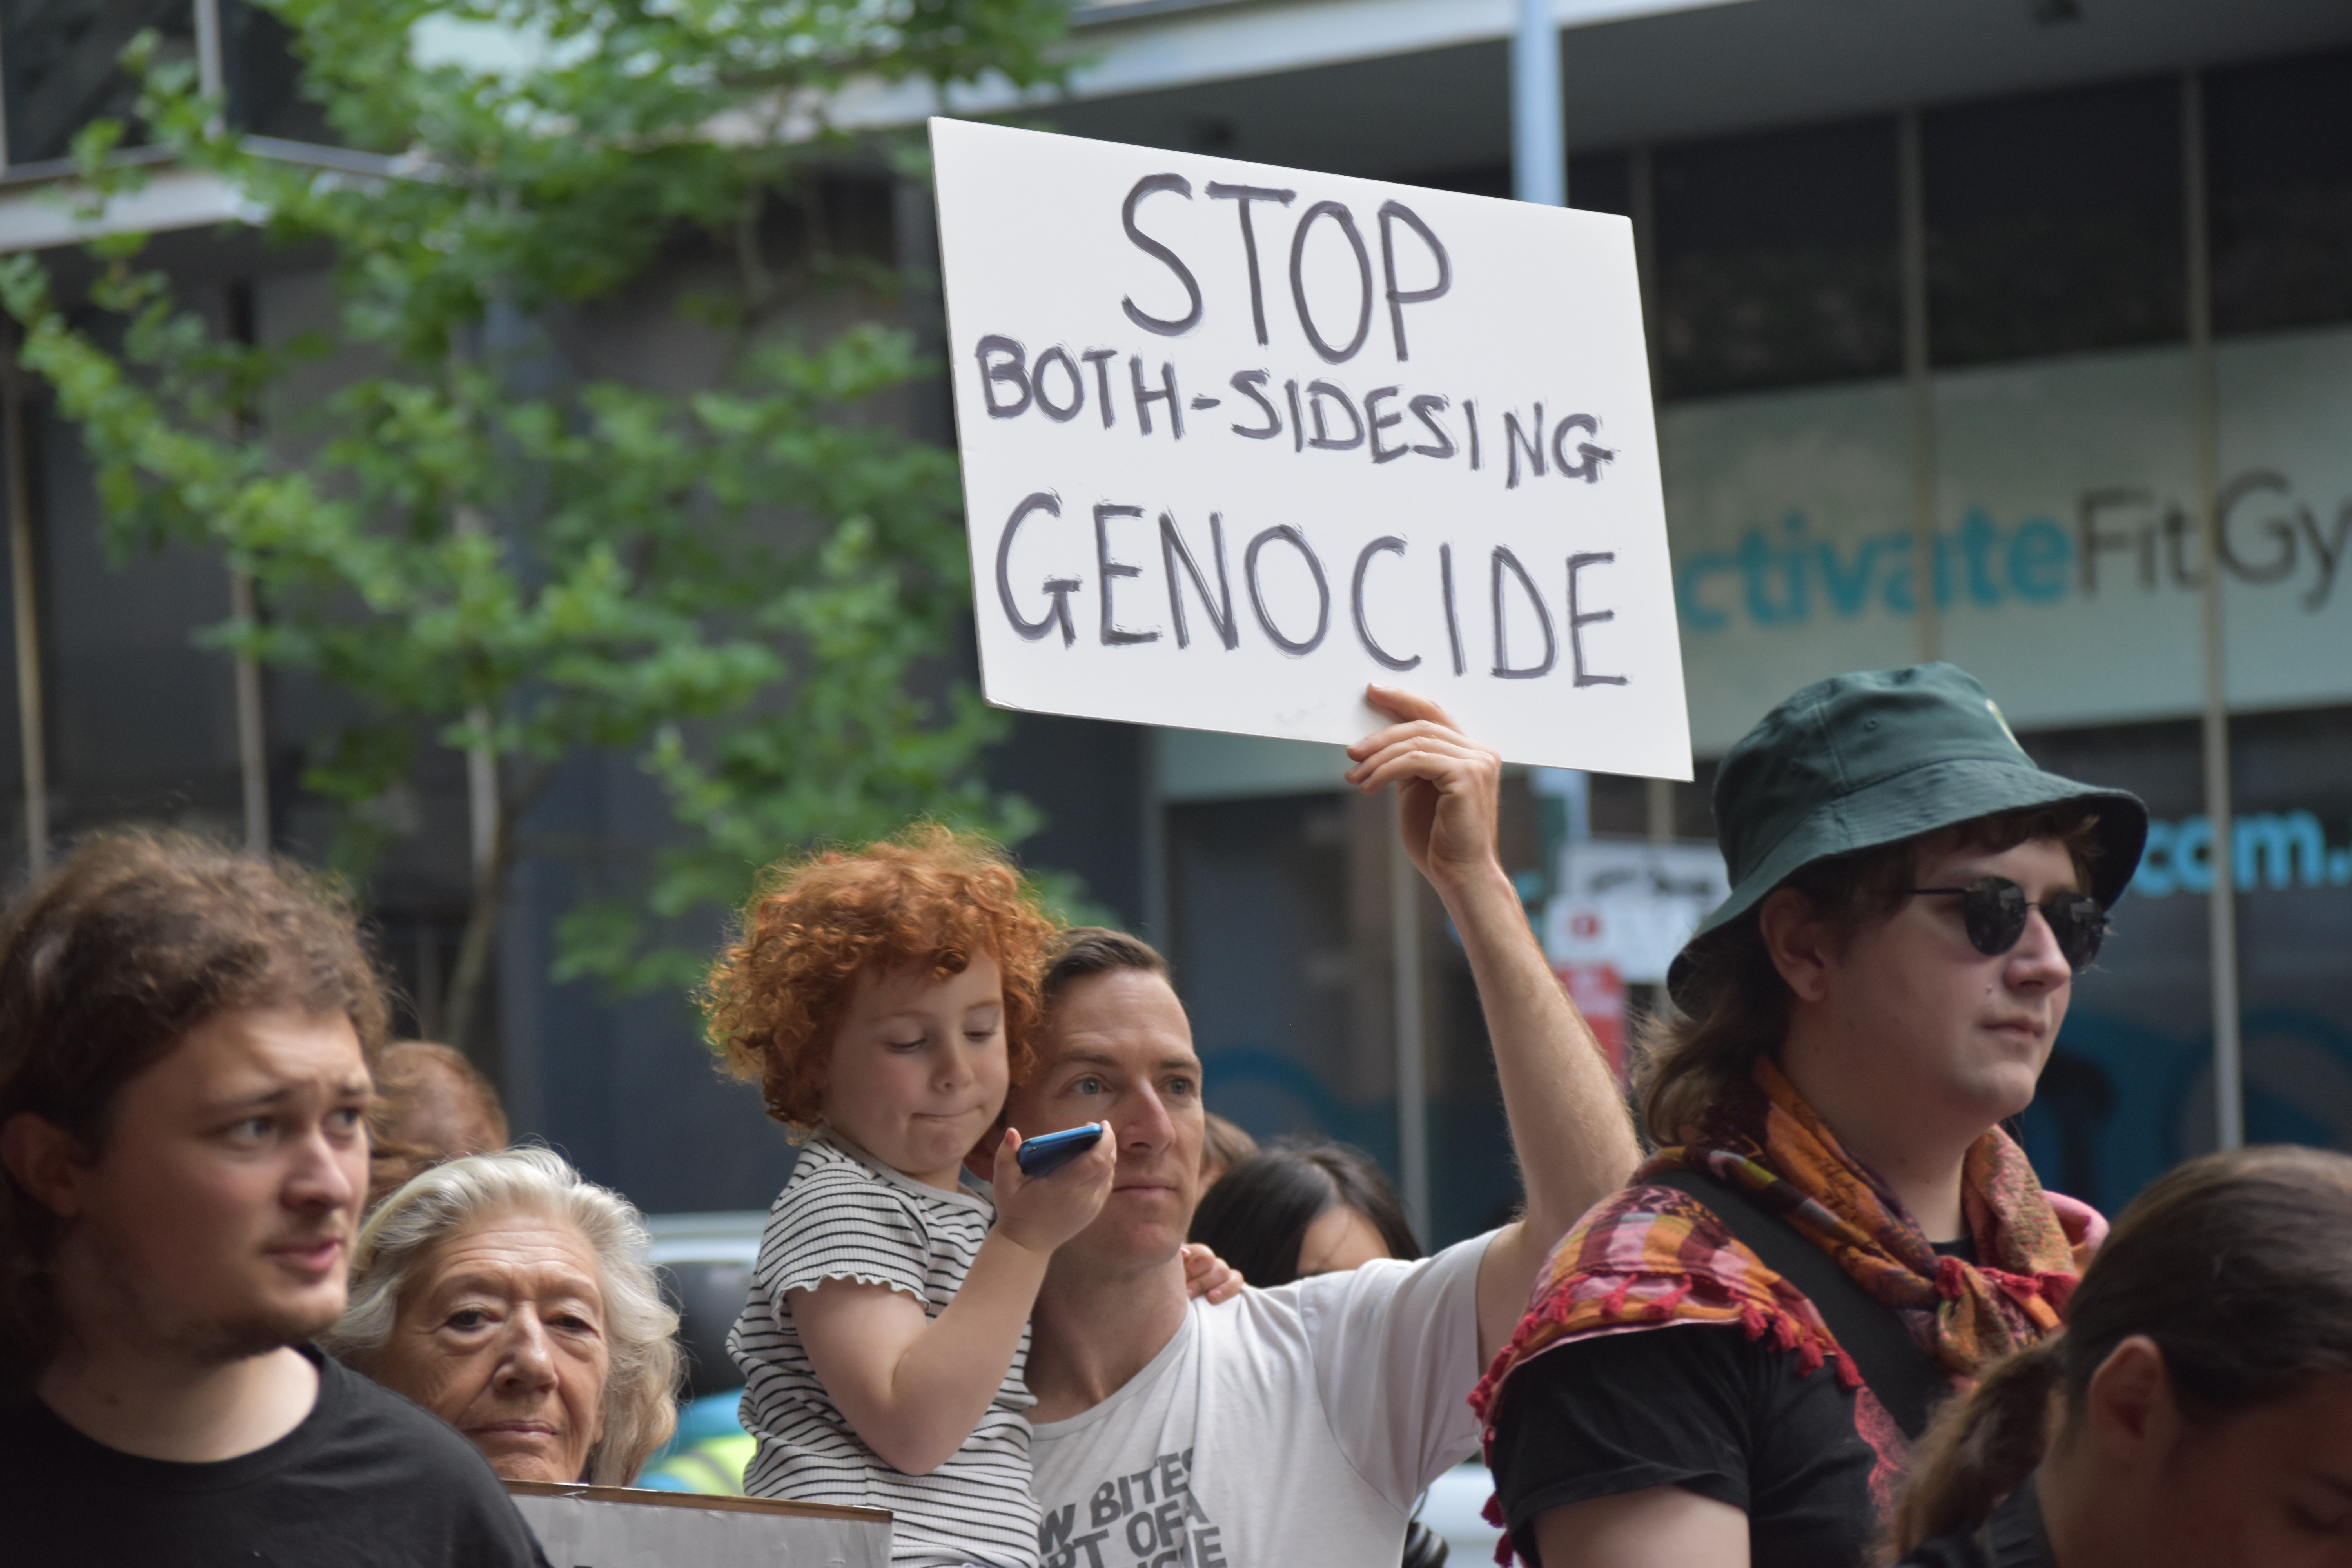 stop both-sidesing genocide